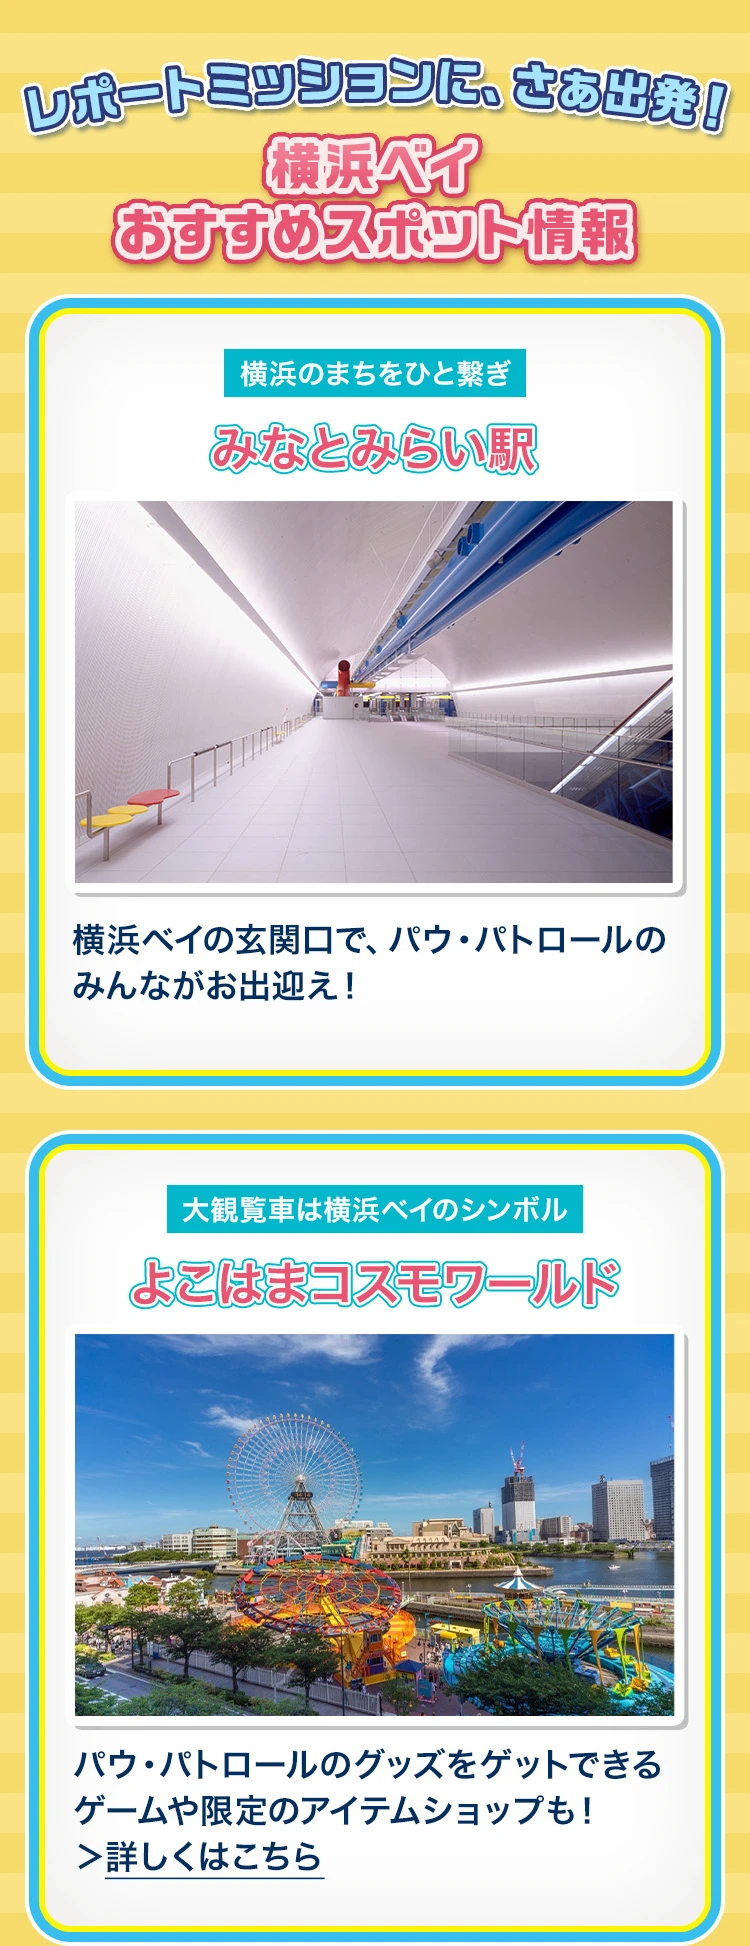 横浜ベイ おすすめスポット情報 みなとみらい駅：横浜ベイの玄関口で、パウ・パトロールのみんながお出迎え！ よこはまコスモワールド：パウ・パトロールのグッズをゲットできるゲームや限定のアイテムショップも！